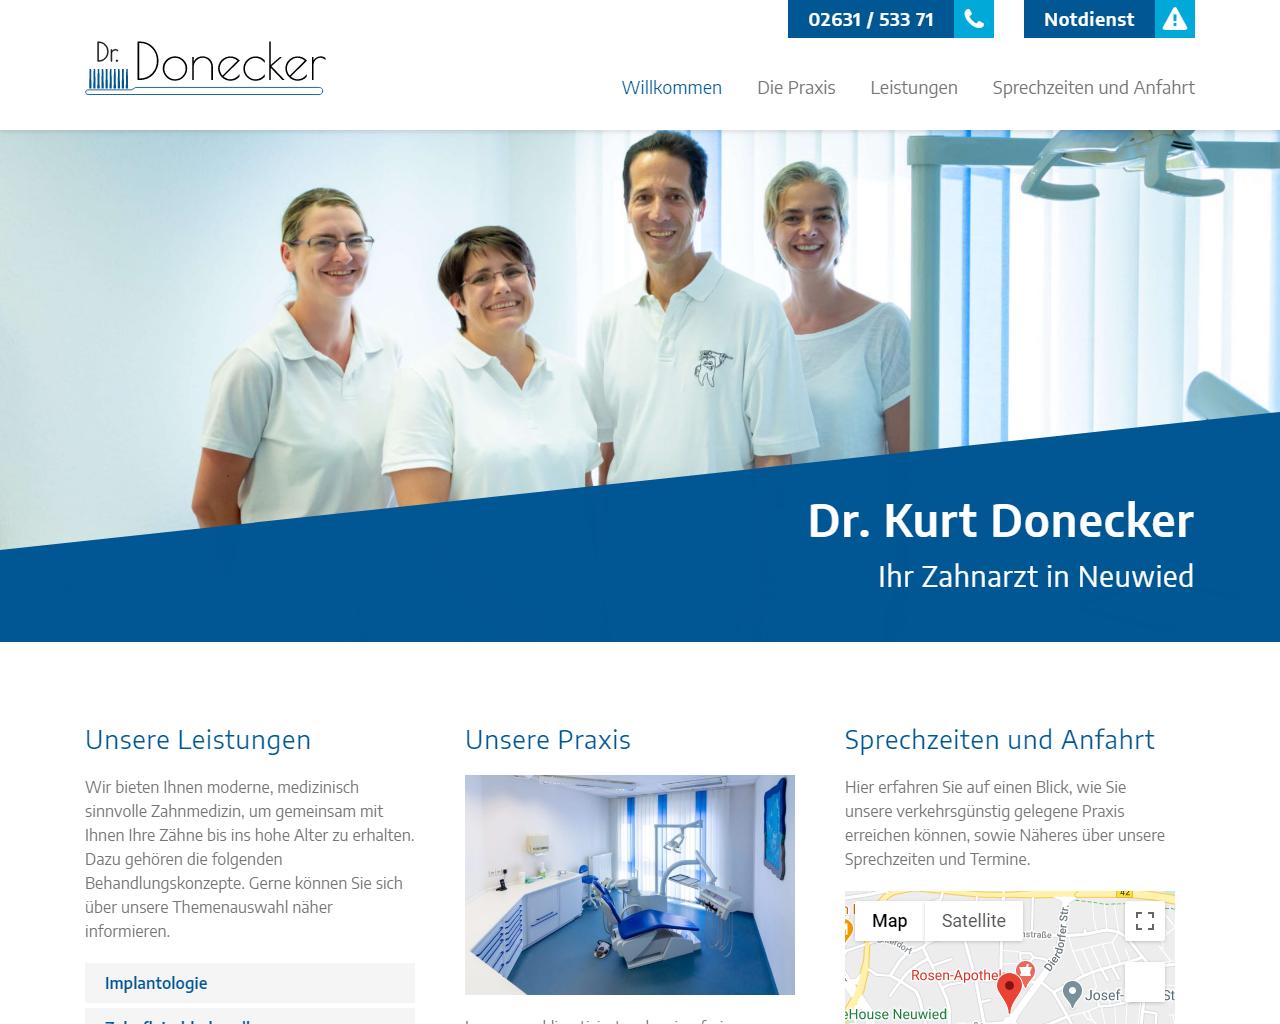 Dr. Kurt Donecker